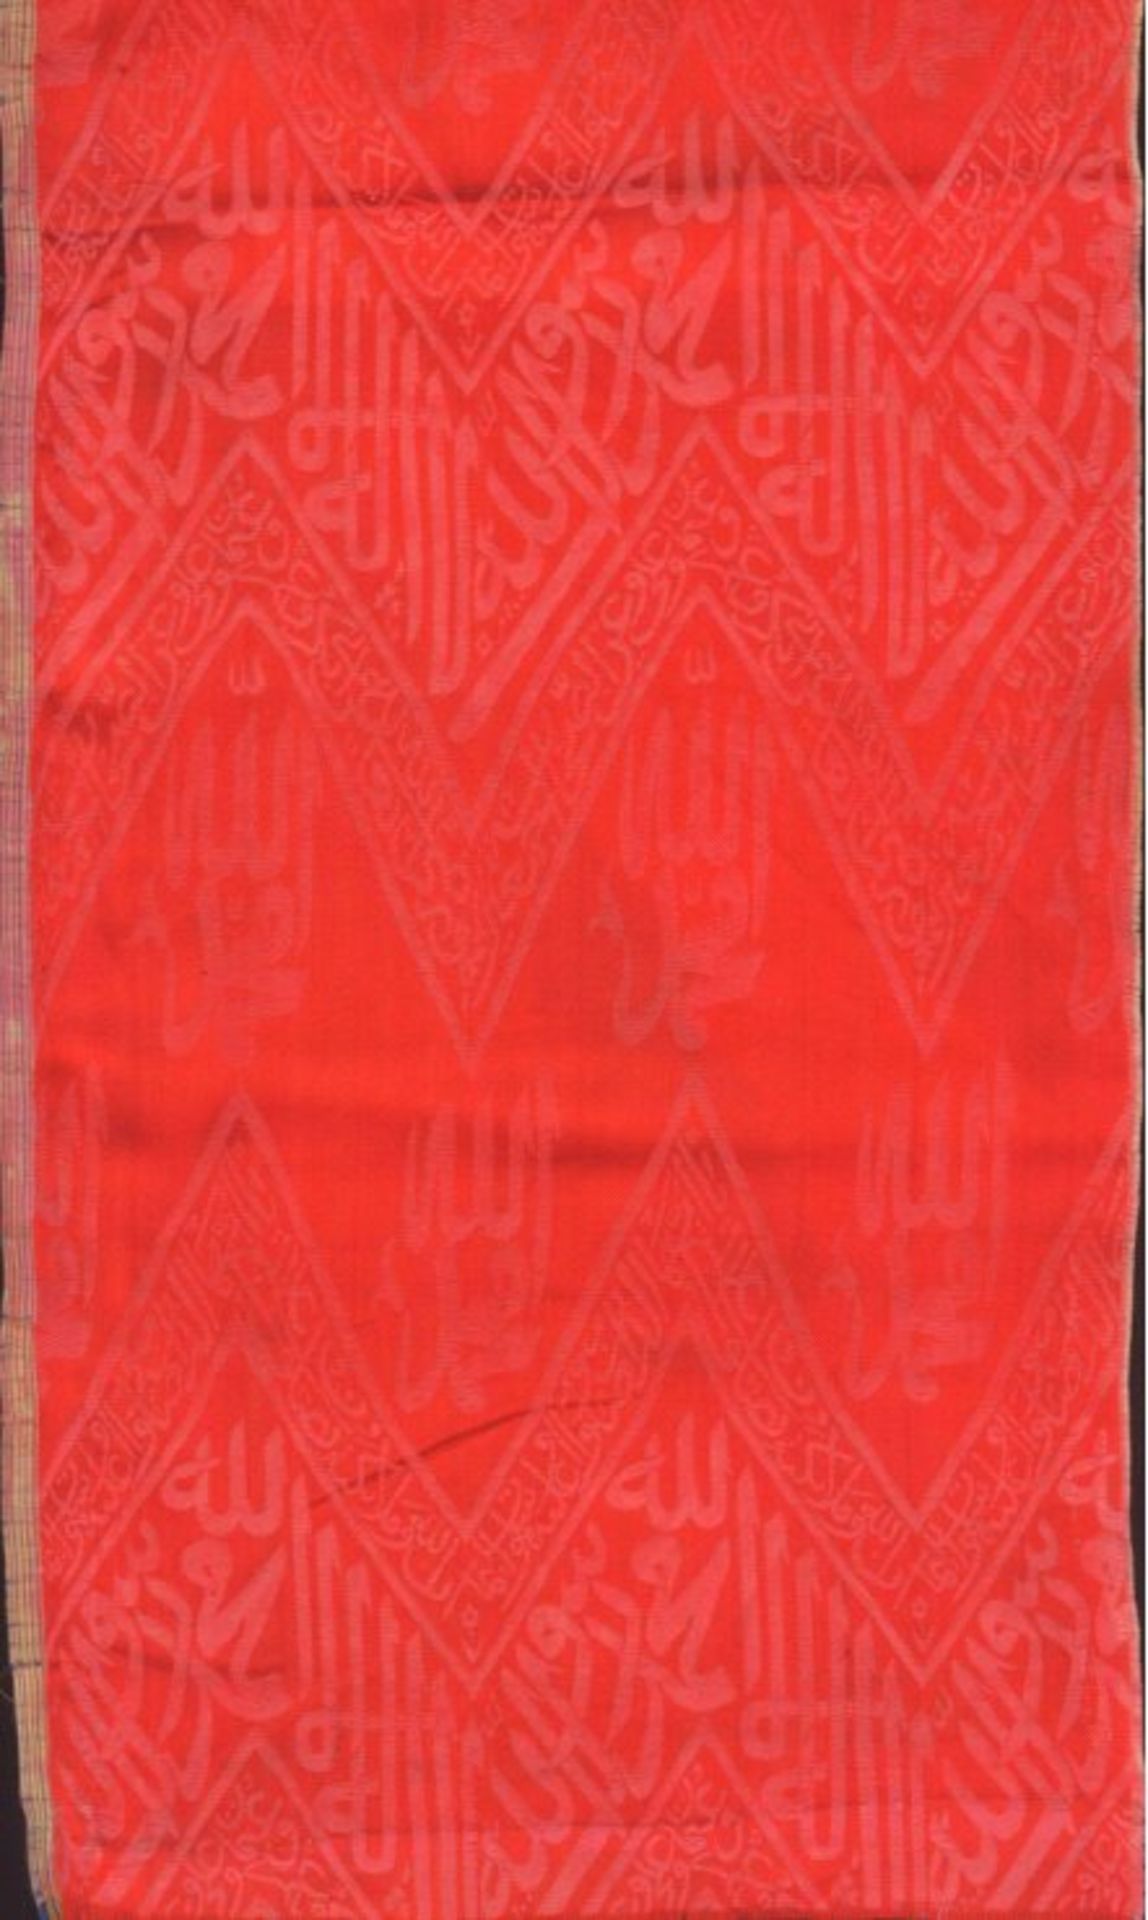 Osmanisches Tuch, Türkey 18./19. Jh.Feine Seidenstickerei mit Schrift: Möge Allah gepriesen sei,sein - Bild 2 aus 5